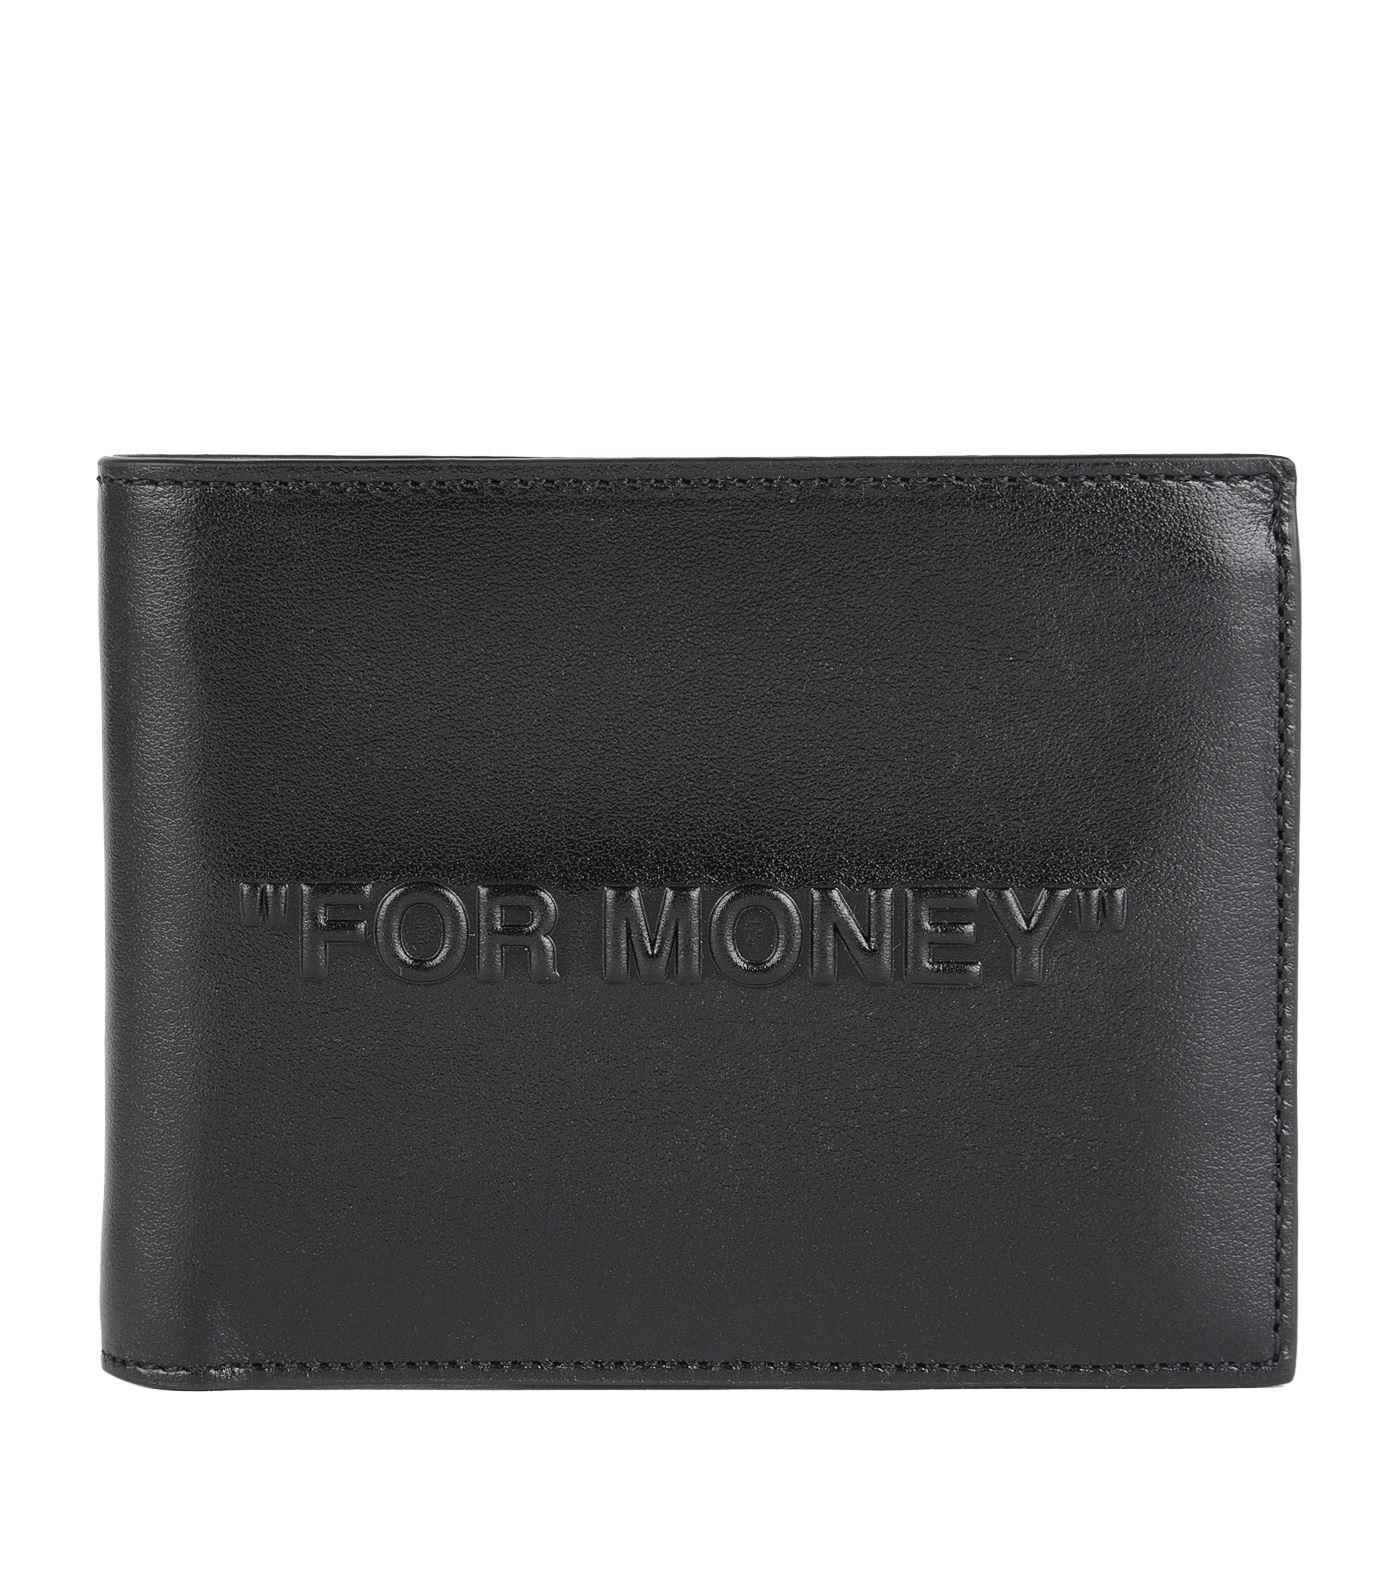 Off-White c/o Virgil Abloh Leather For Money Bi-fold Wallet in Black for Men - Lyst